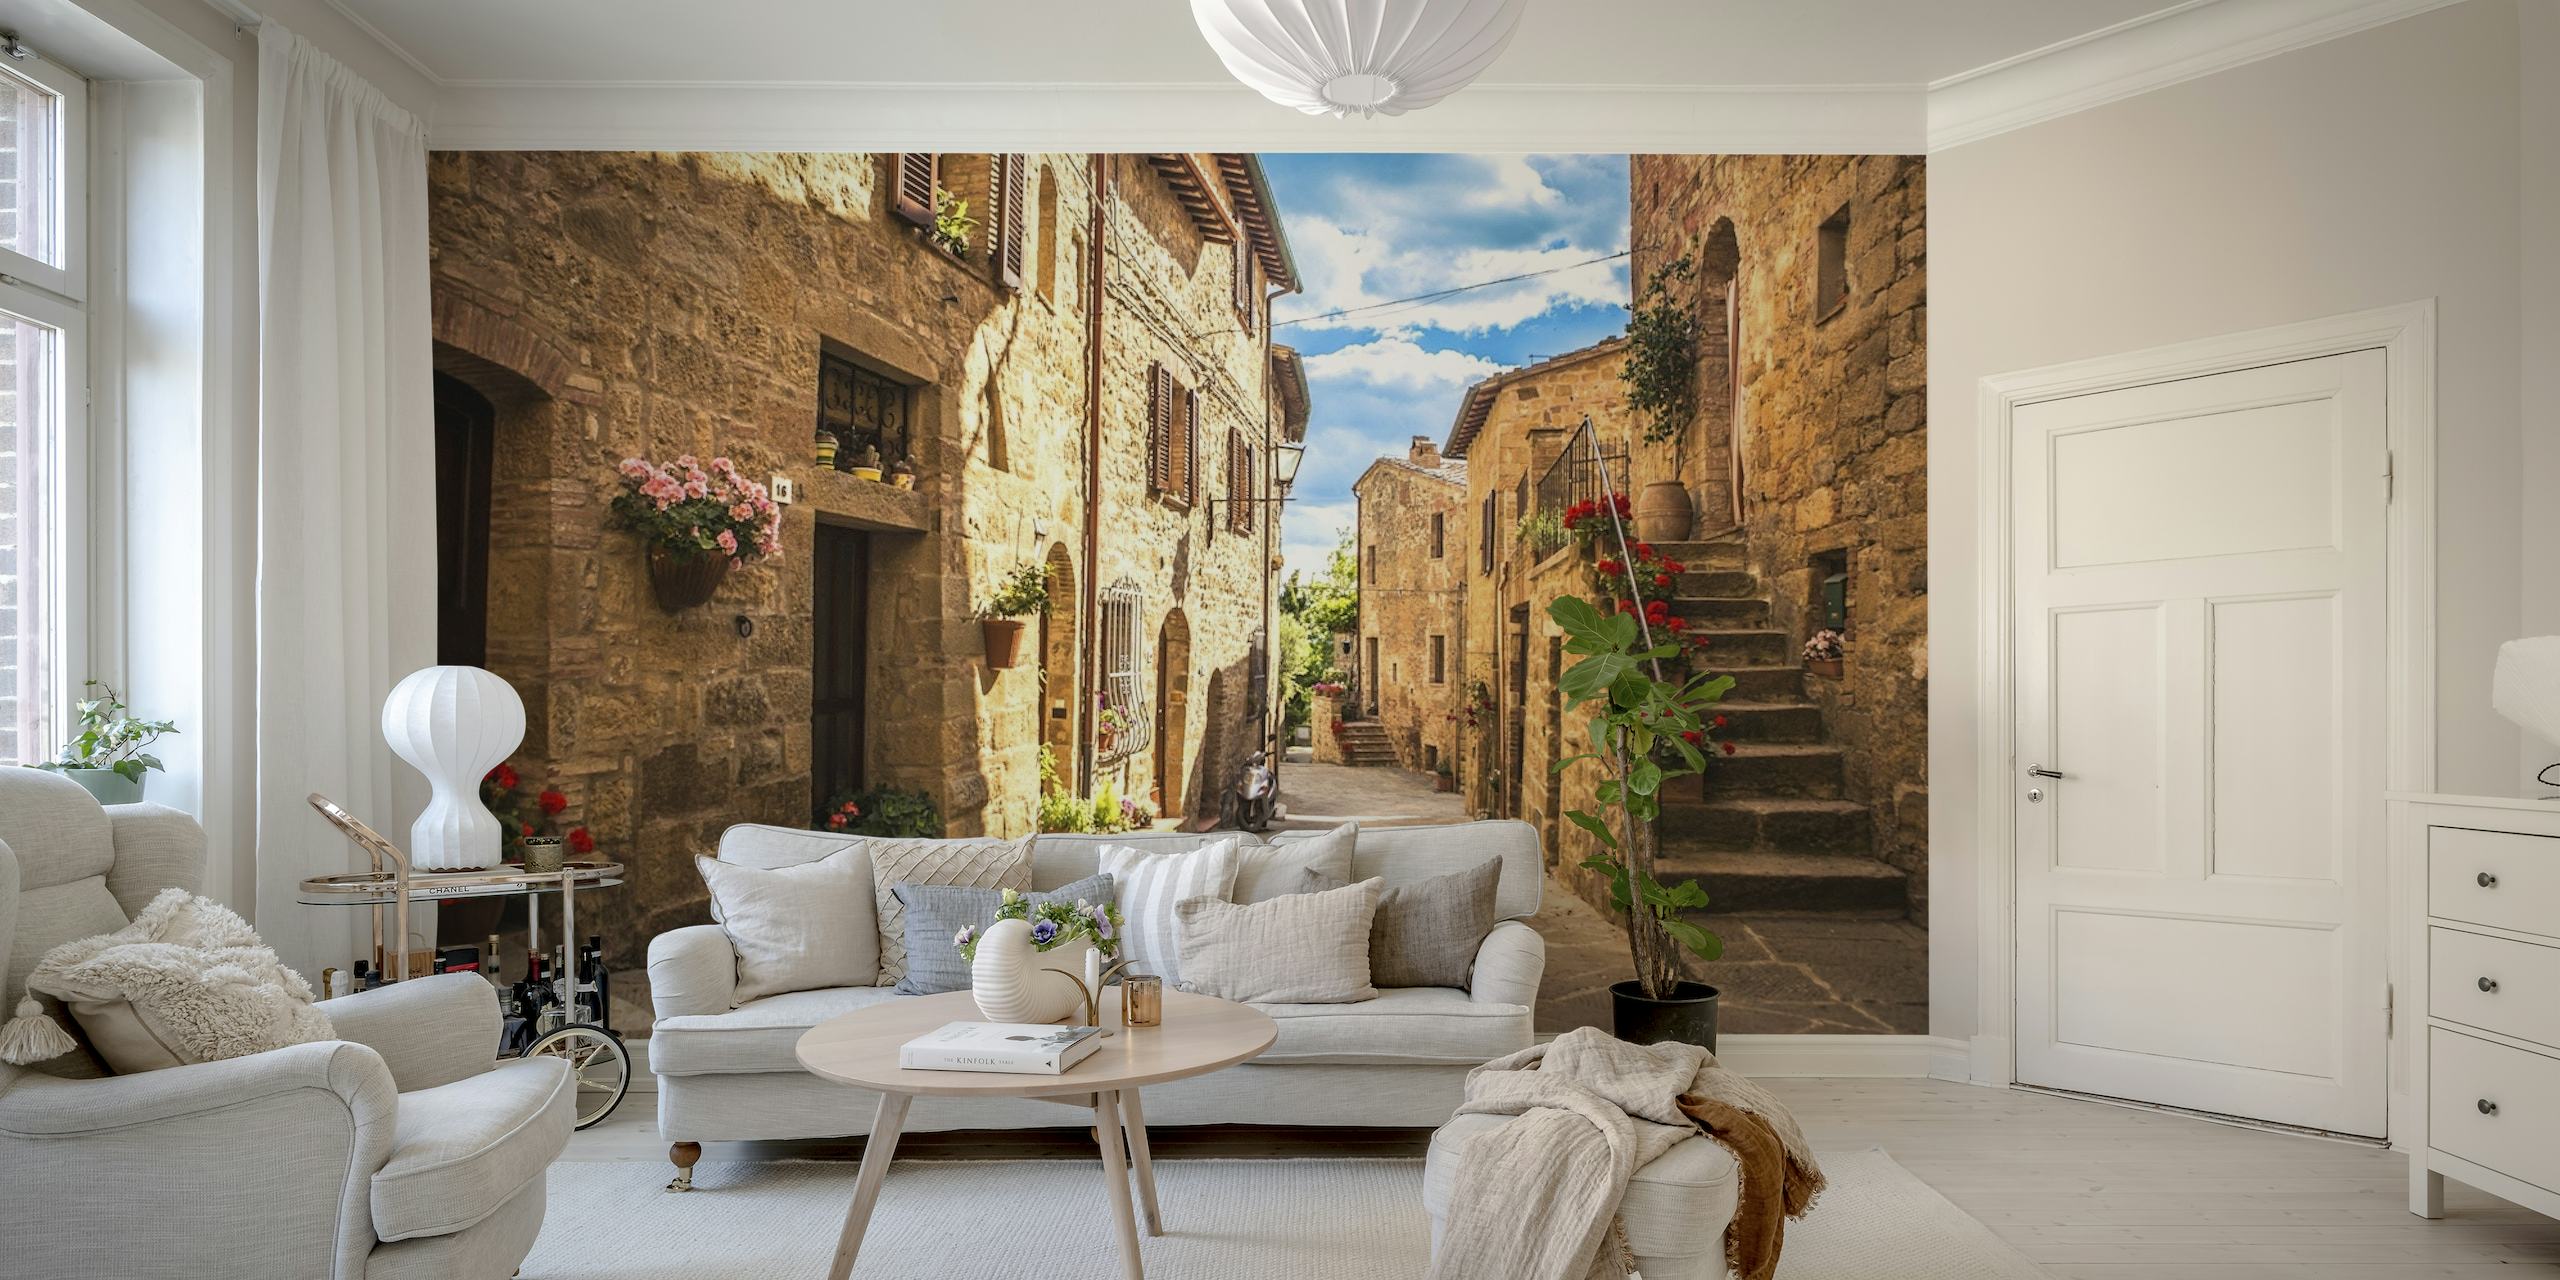 Zidna slika u talijanskoj uličici s popločenom stazom i tradicionalnim kamenim zgradama